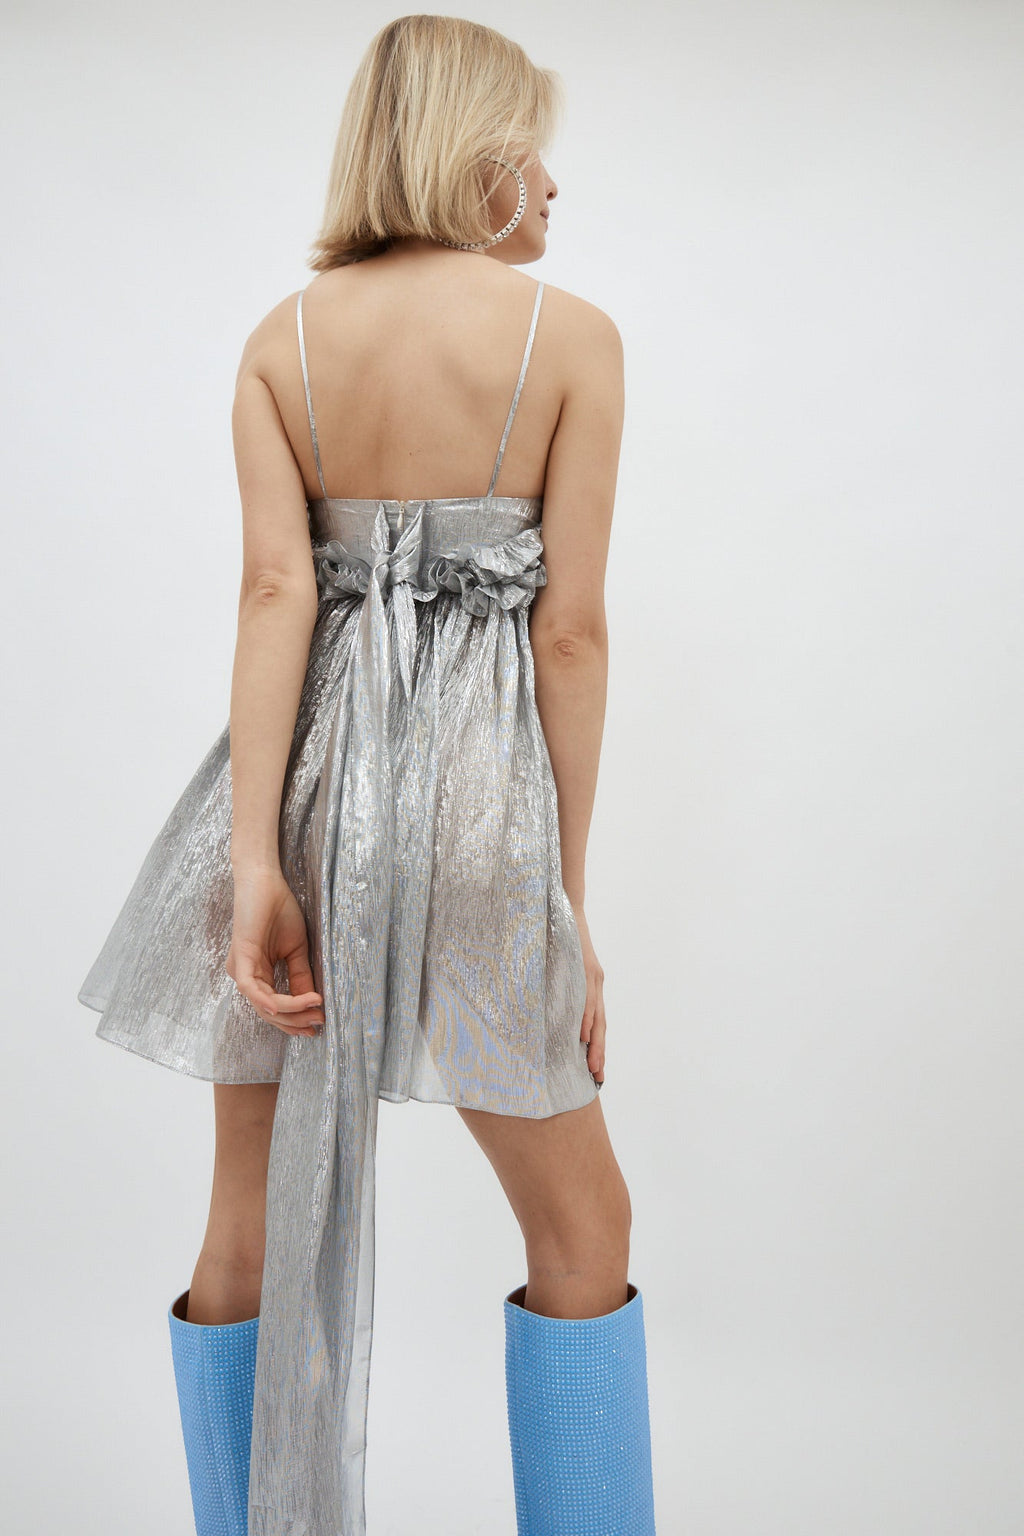 Ari Silver Mini Dress